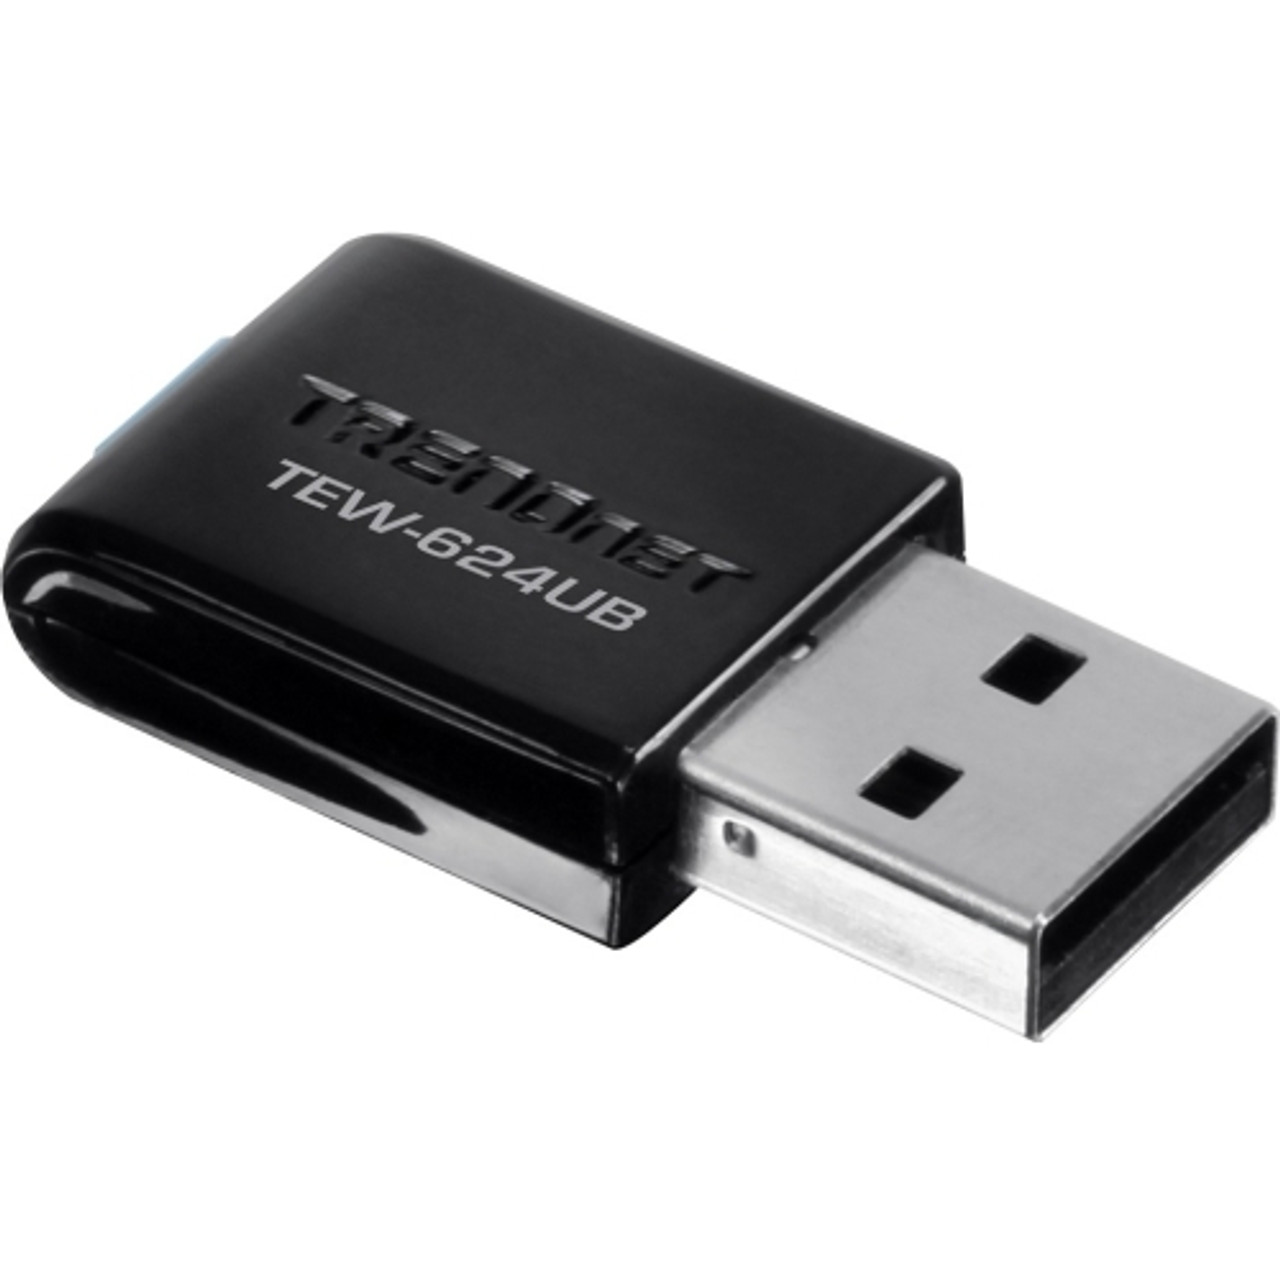 TEW-624UB TRENDnet TEW-624UB Wireless N USB Adapter USB 300Mbps IEEE 802.11n (draft)